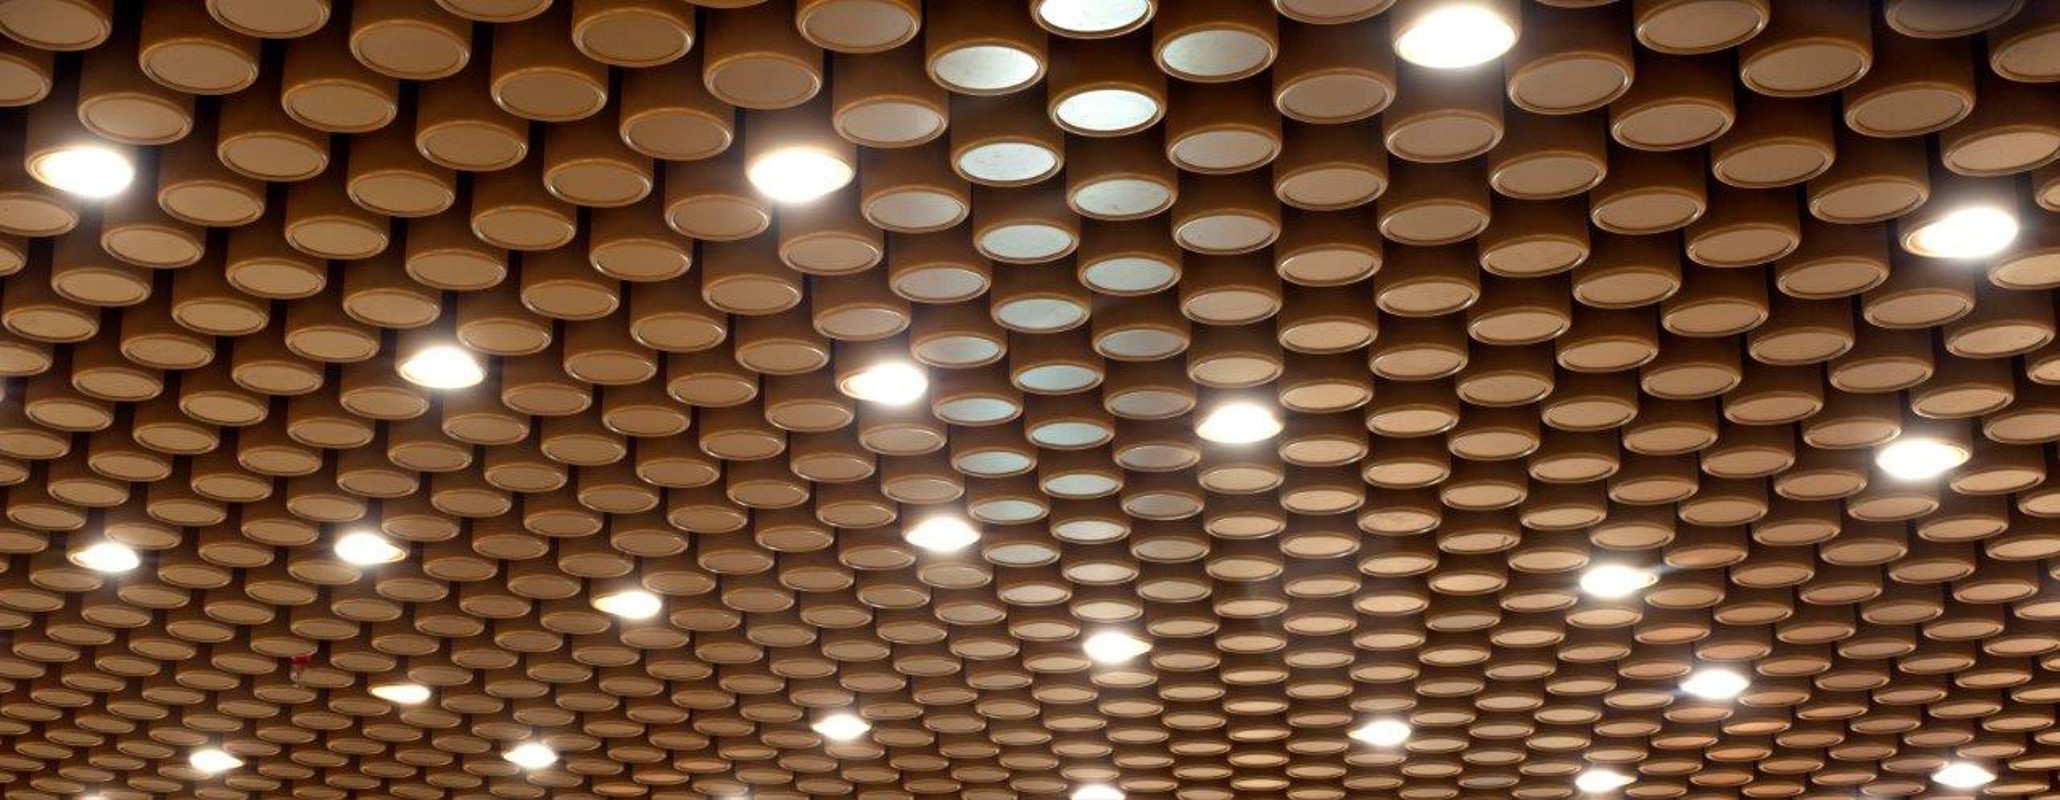 Bespoke metal ceilings